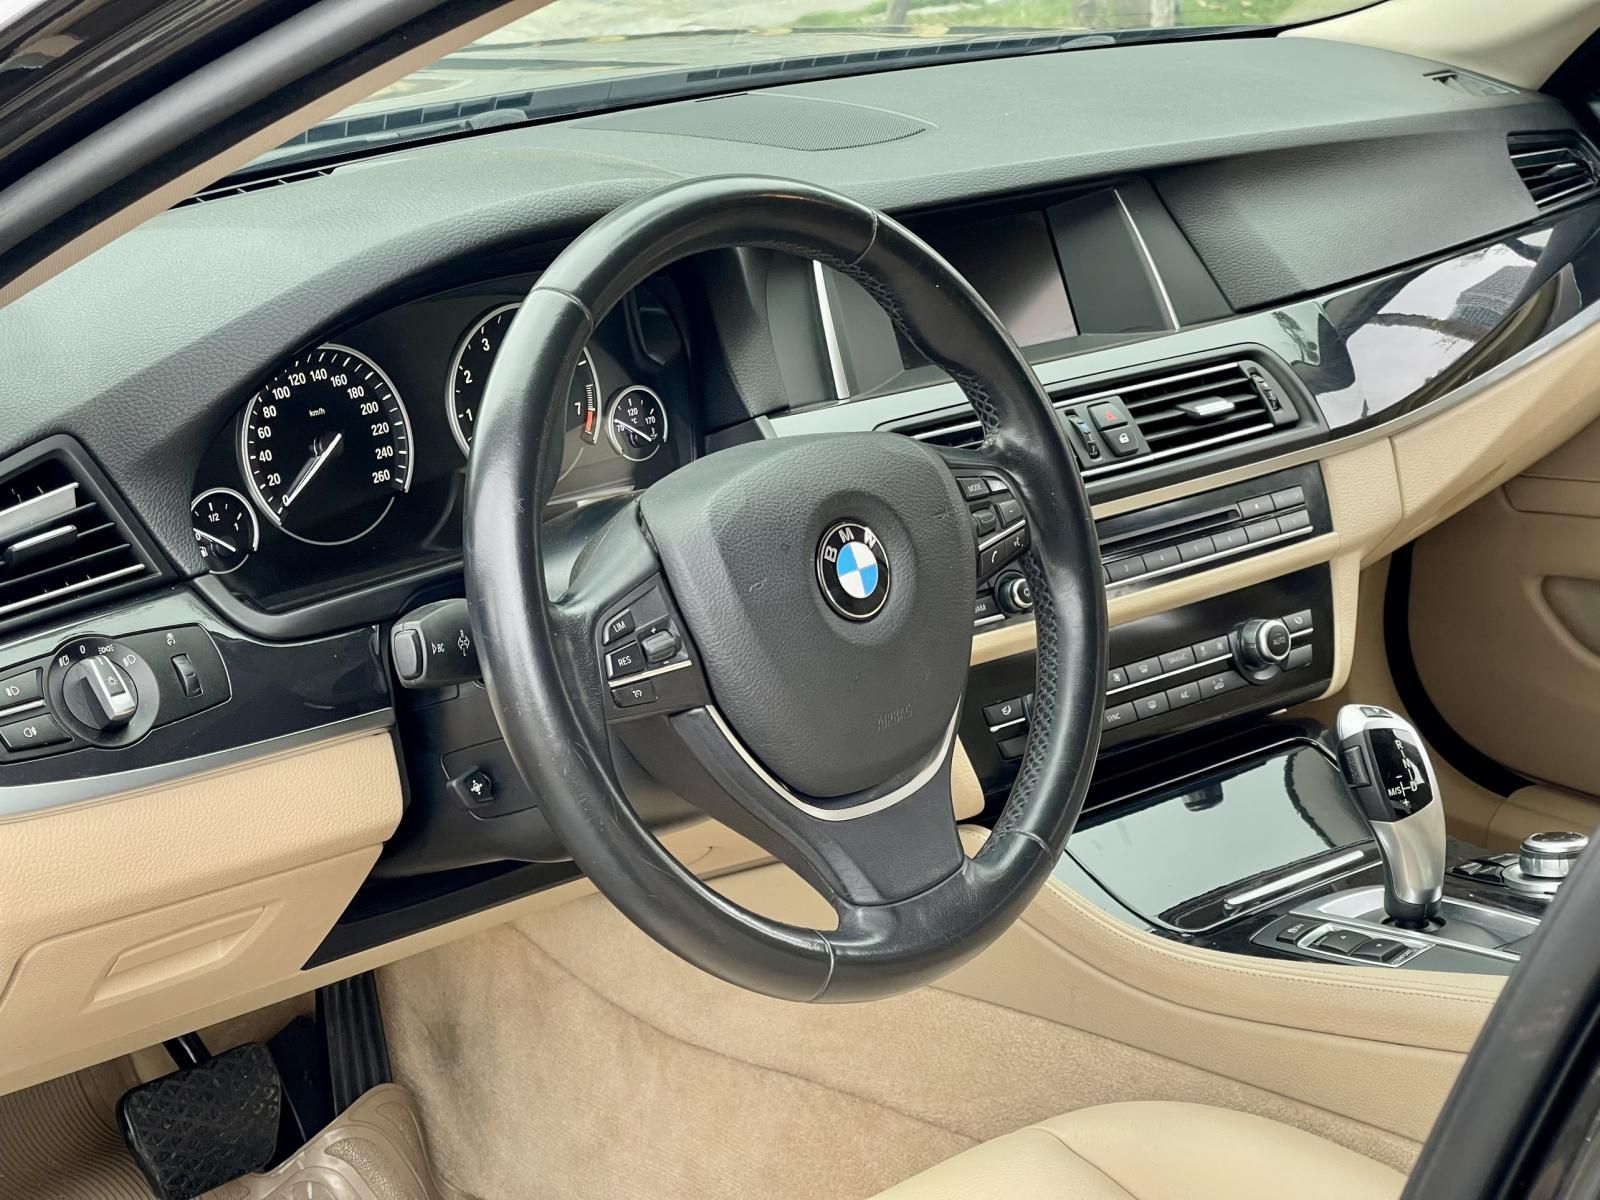 BMW 520i 2016 - Siêu mới